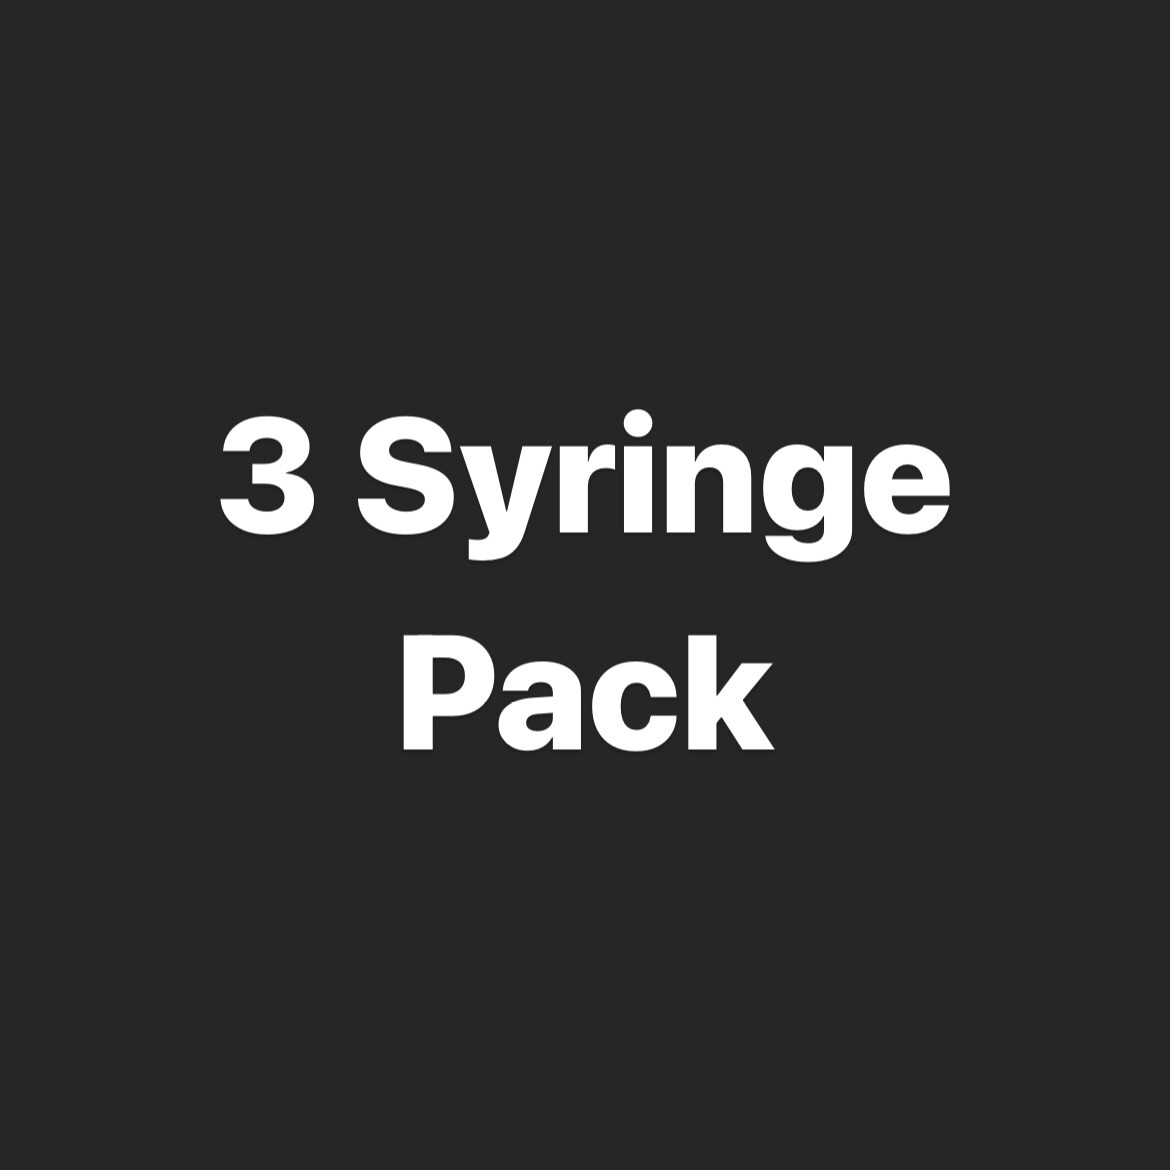 3 Syringe Pack